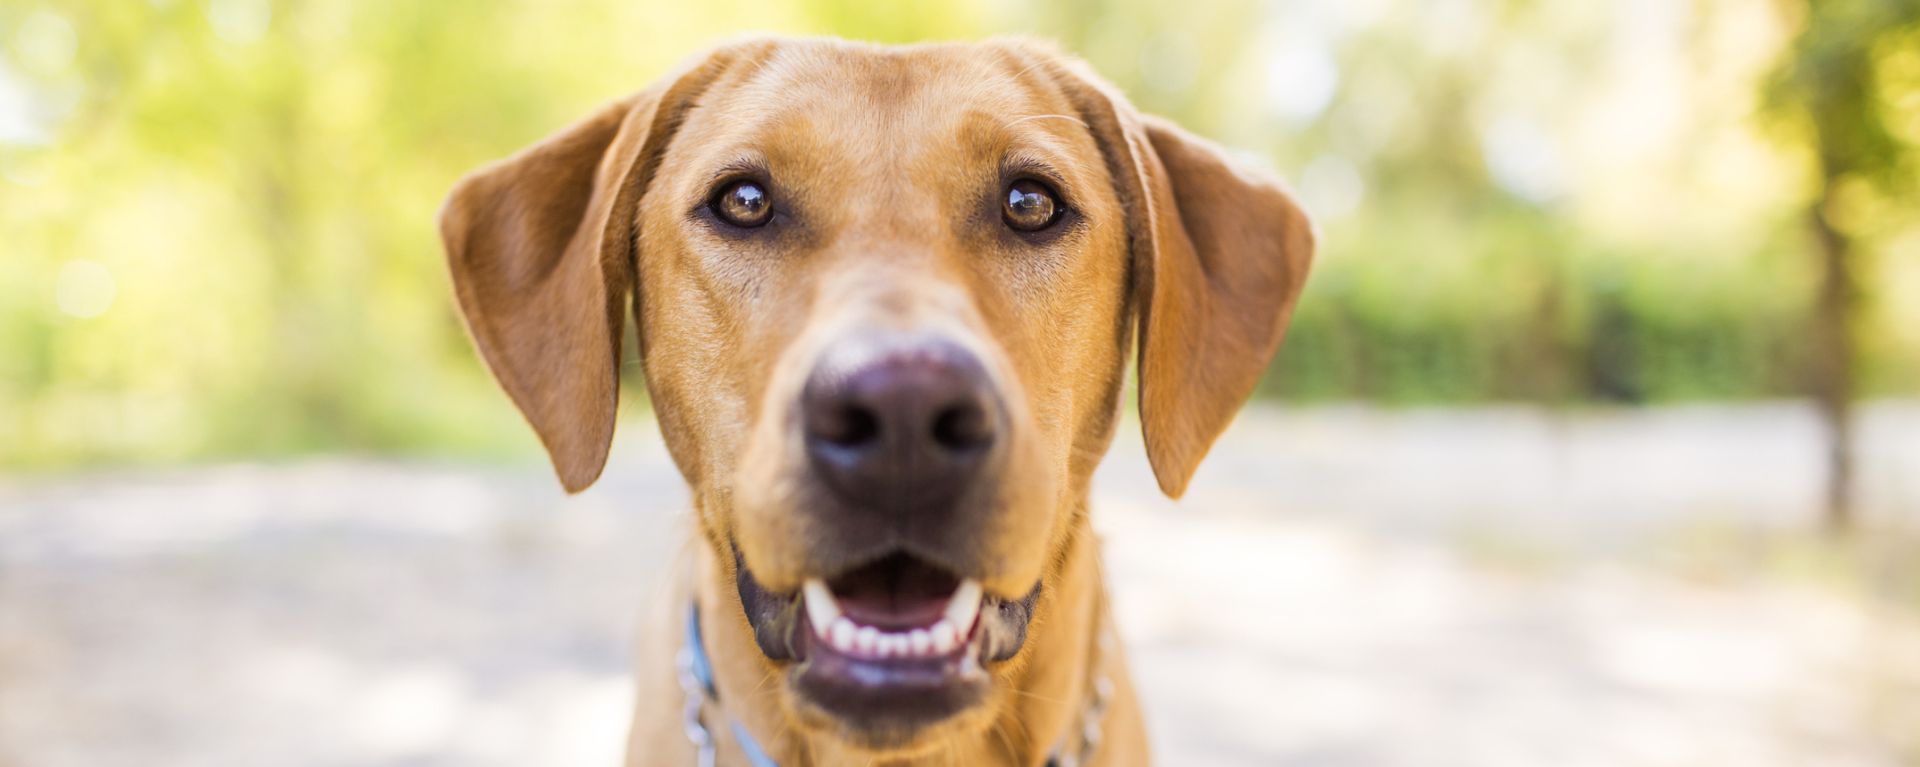 Коронавирусная инфекция у собак: причины, симптомы и лечение